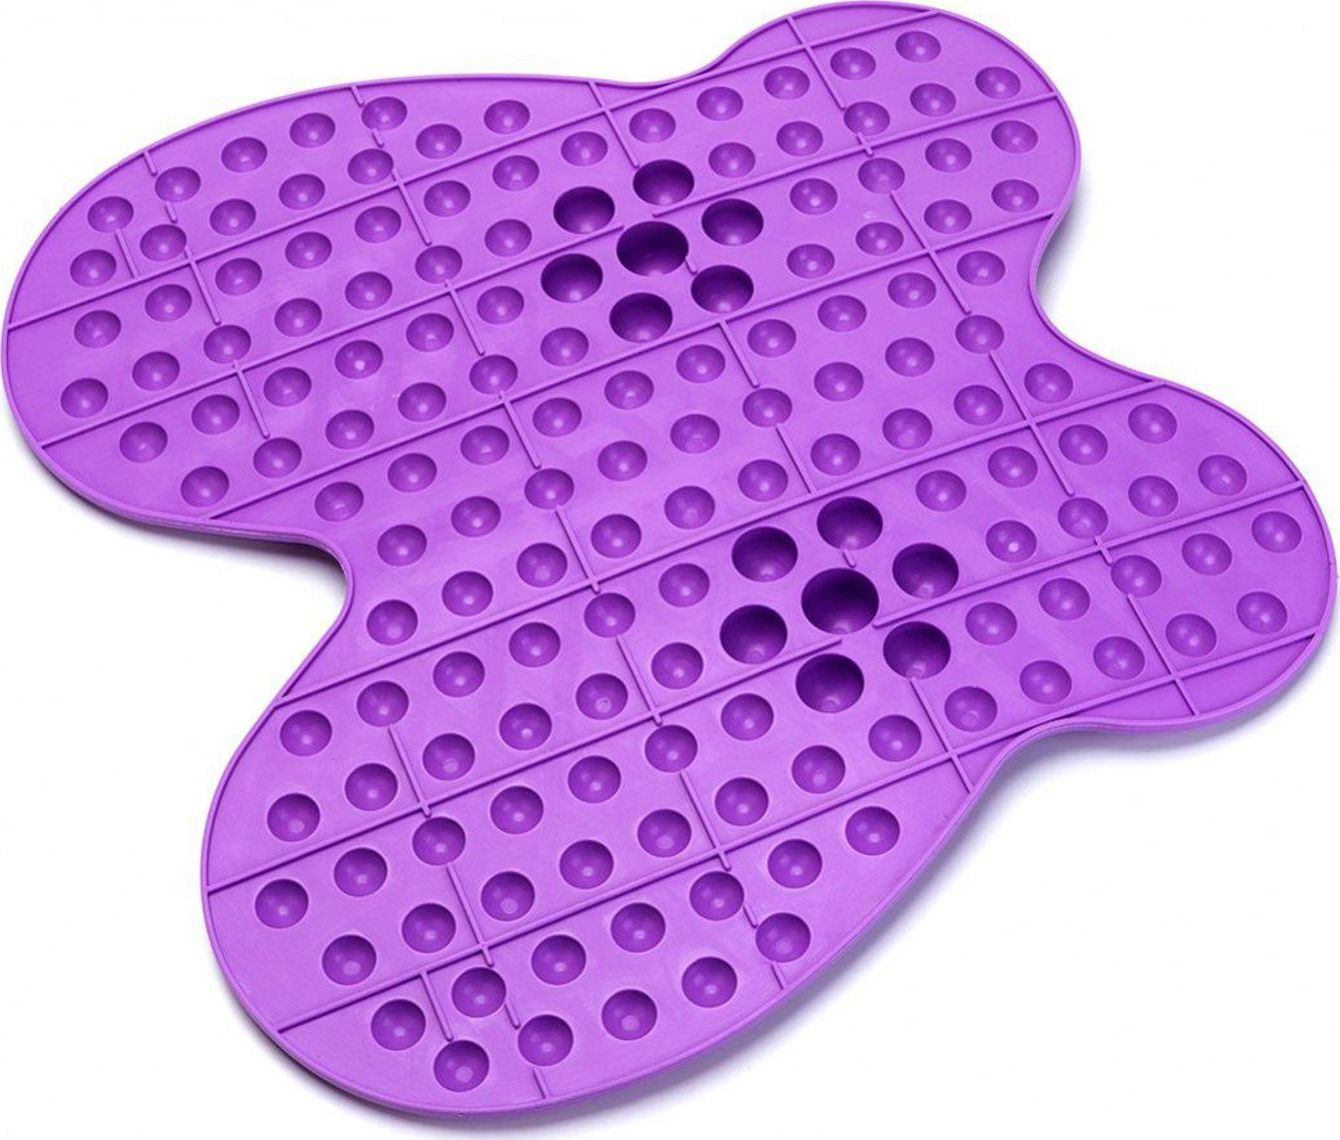 Массажные поверхности. Bradex массажный коврик релакс ми. Коврик массажный рефлексологический для ног «релакс ми» фиолетовый. Futzuki массажный коврик Reflexology mat. Рефлексологический массажный коврик для ног Futzuki.